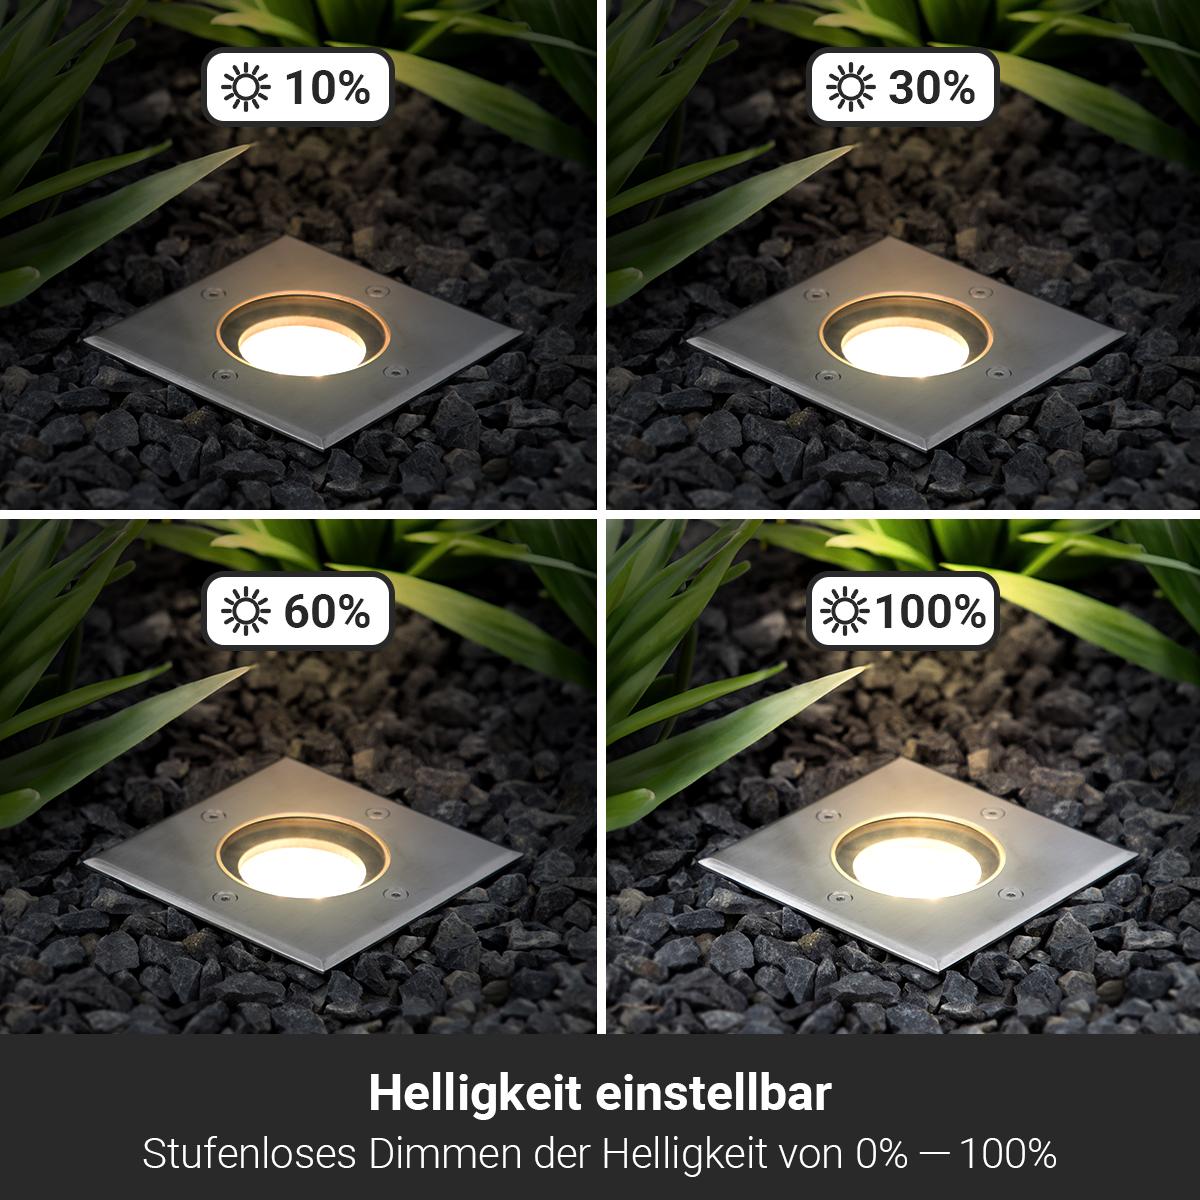 LED Bodeneinbaustrahler eckig Edelstahl 230V IP67 - Leuchtmittel: GU10 5W 2700K DIMMBAR - Anzahl: 3x